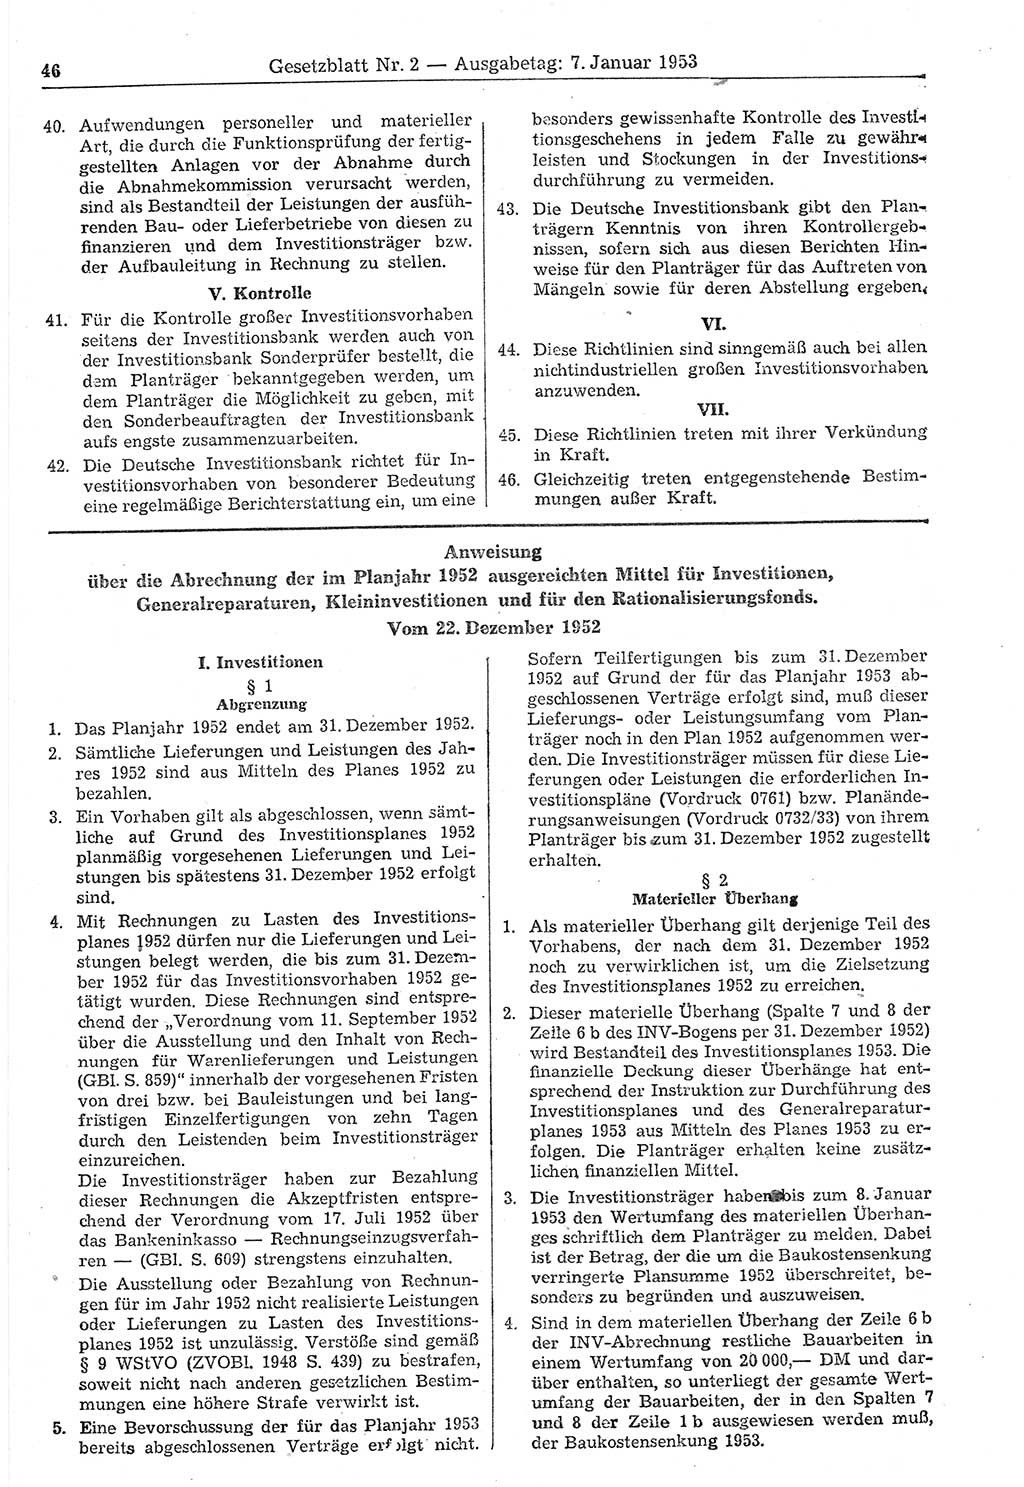 Gesetzblatt (GBl.) der Deutschen Demokratischen Republik (DDR) 1953, Seite 46 (GBl. DDR 1953, S. 46)